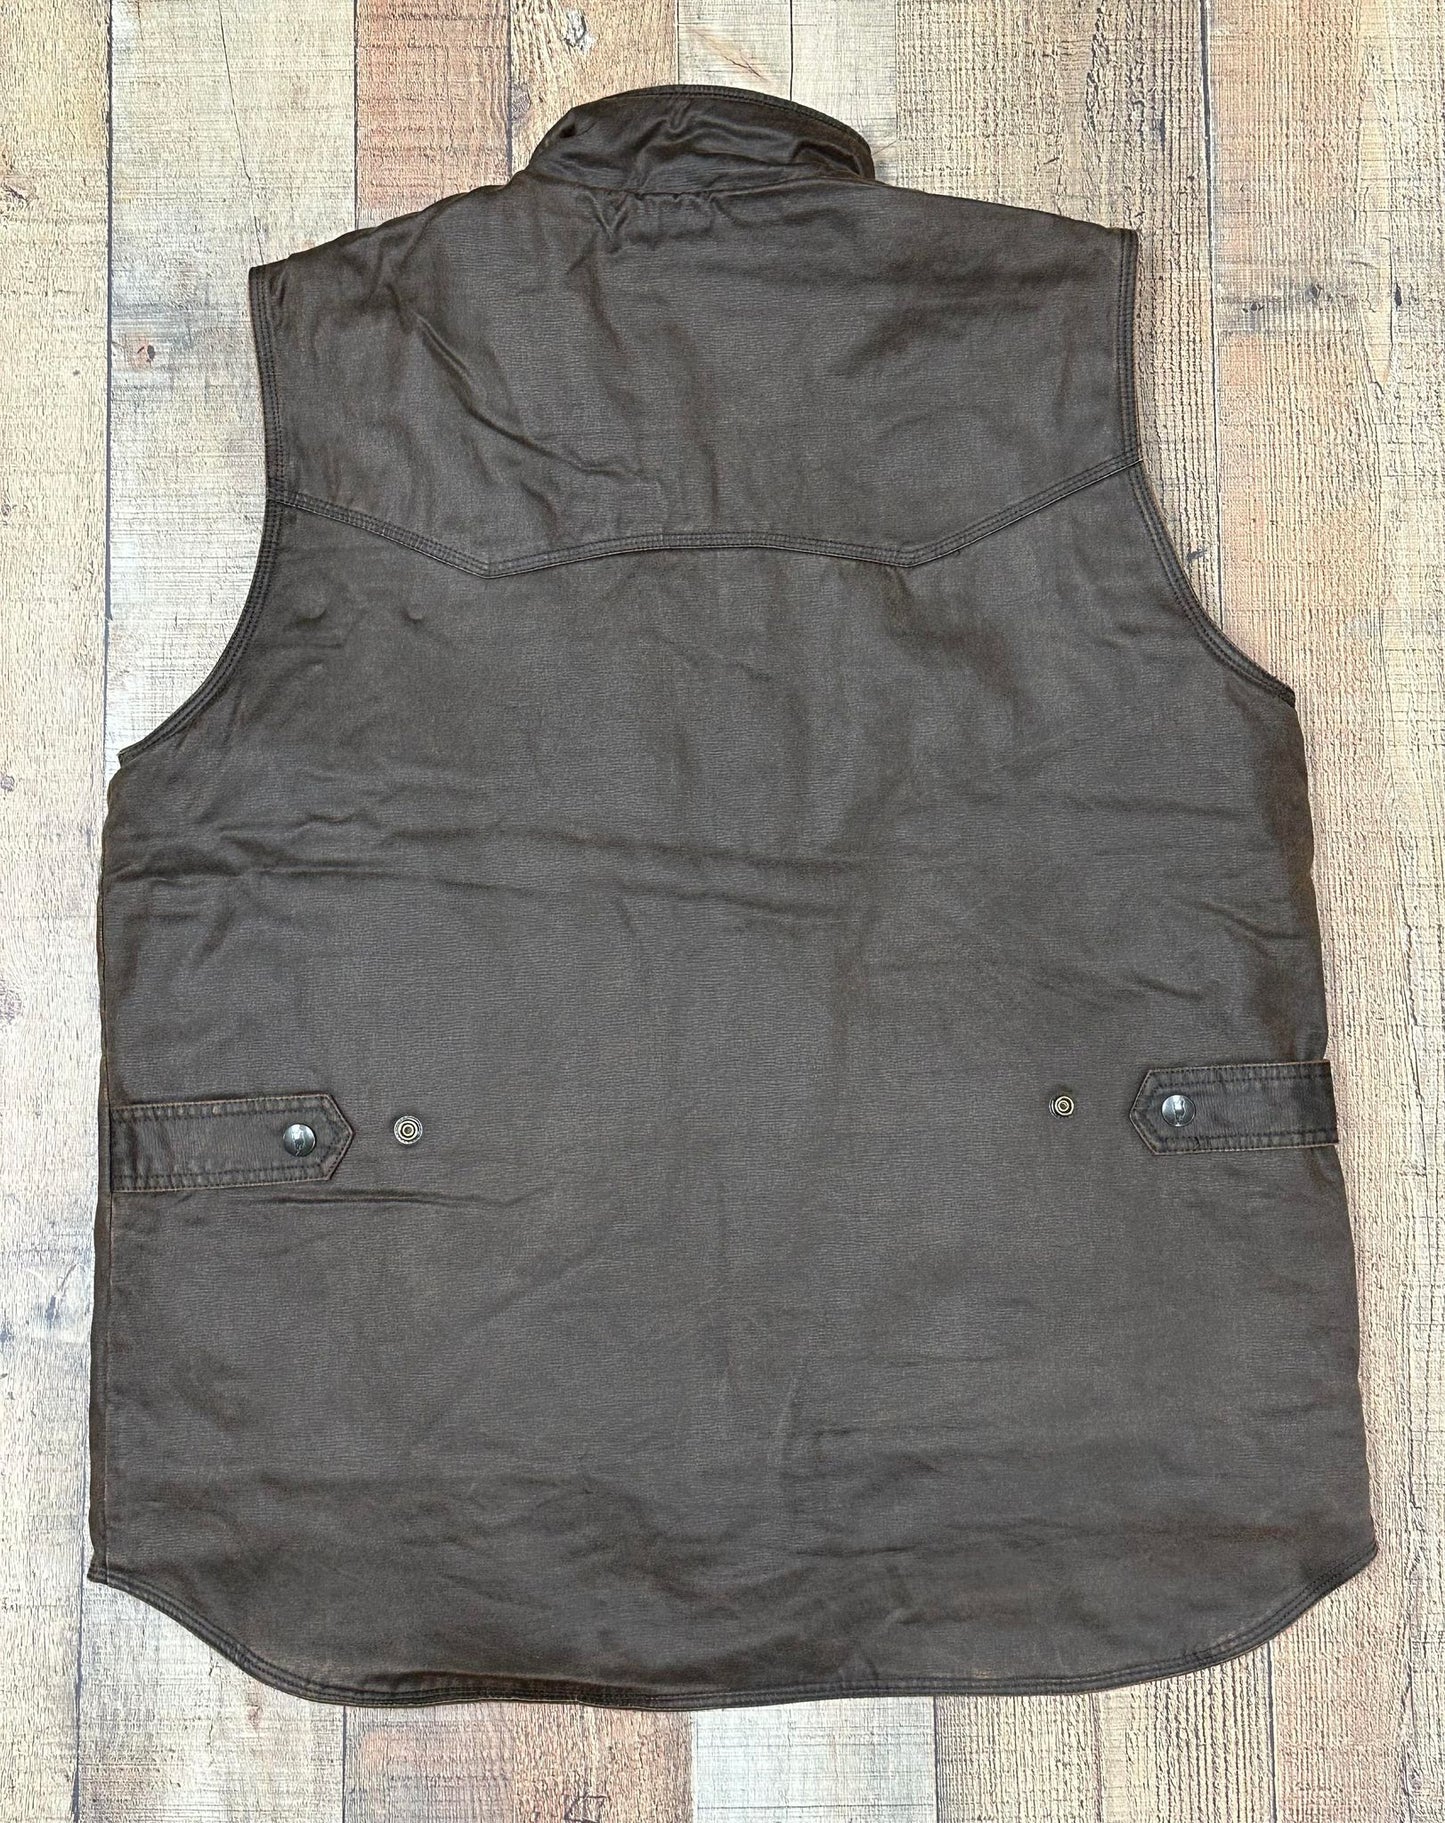 Outback Leather Landsman Vest